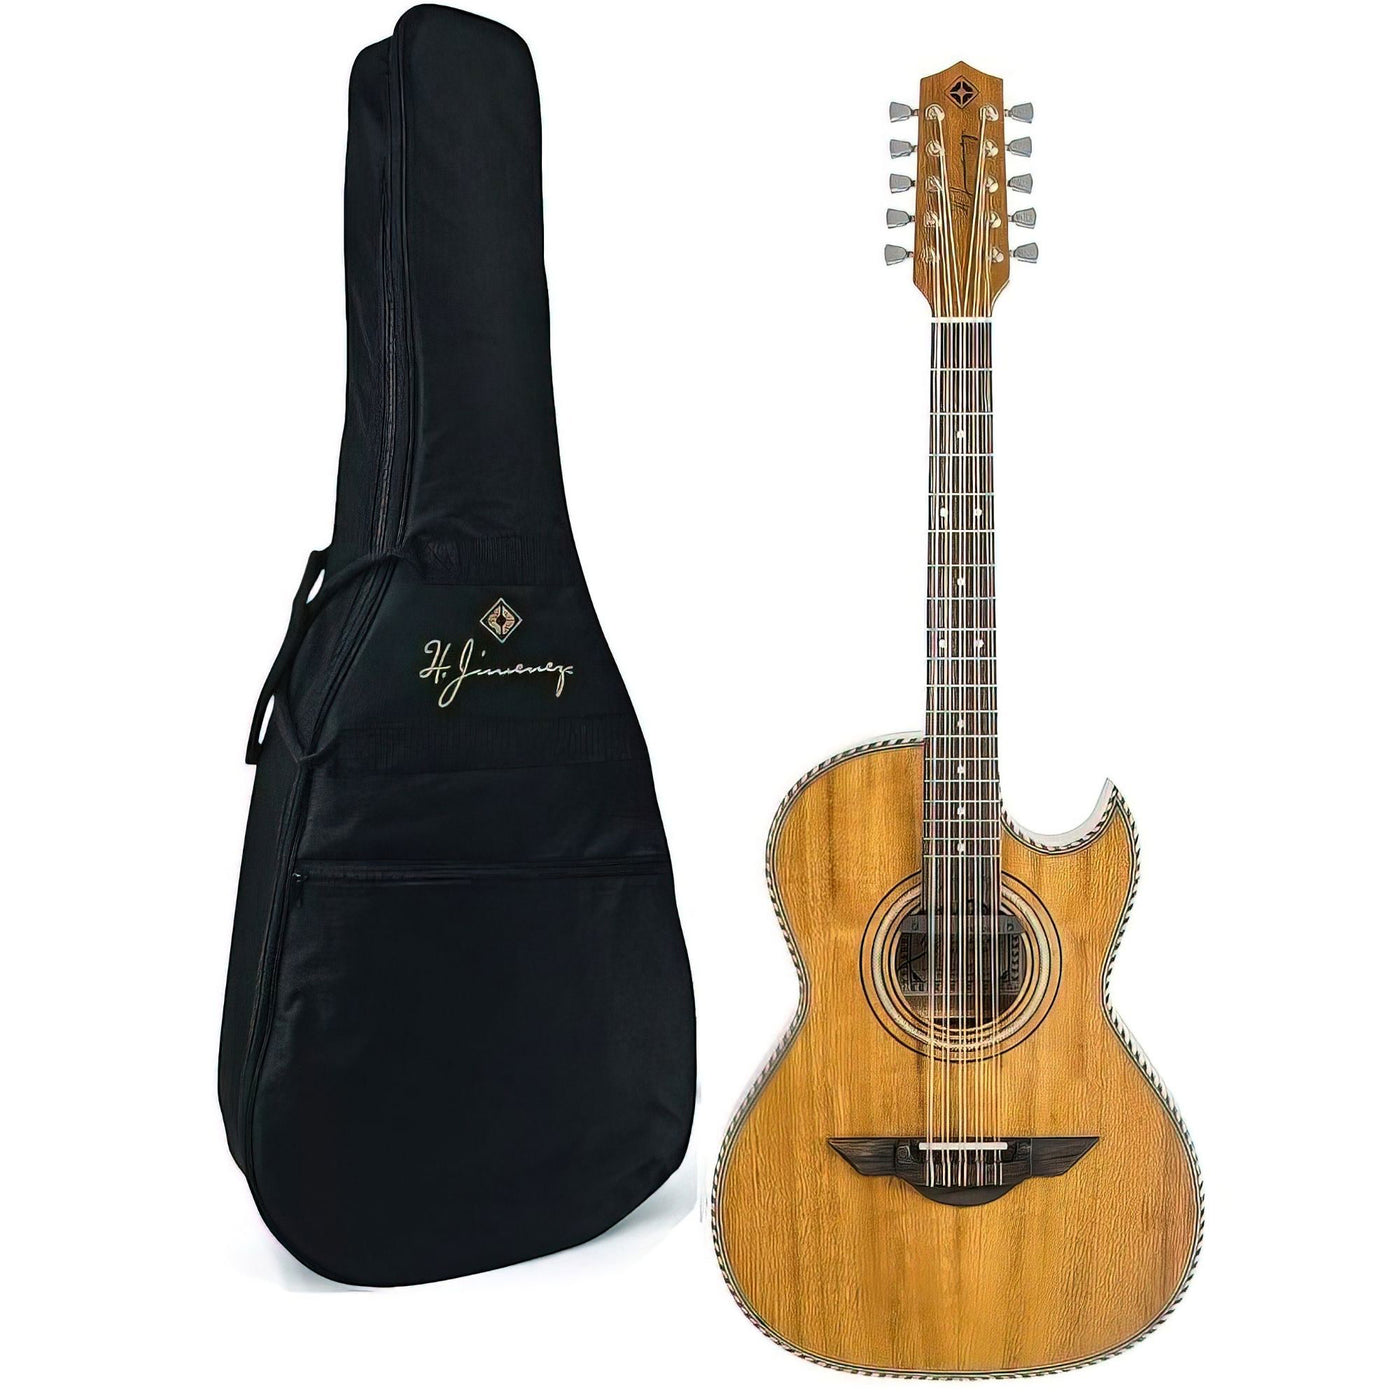 H. Jimenez LBQ1ENM El Esta'ndar Acoustic-Electric Guitar, Bajo Quinto Natural Mahogany ,With Cutaway and Electronics